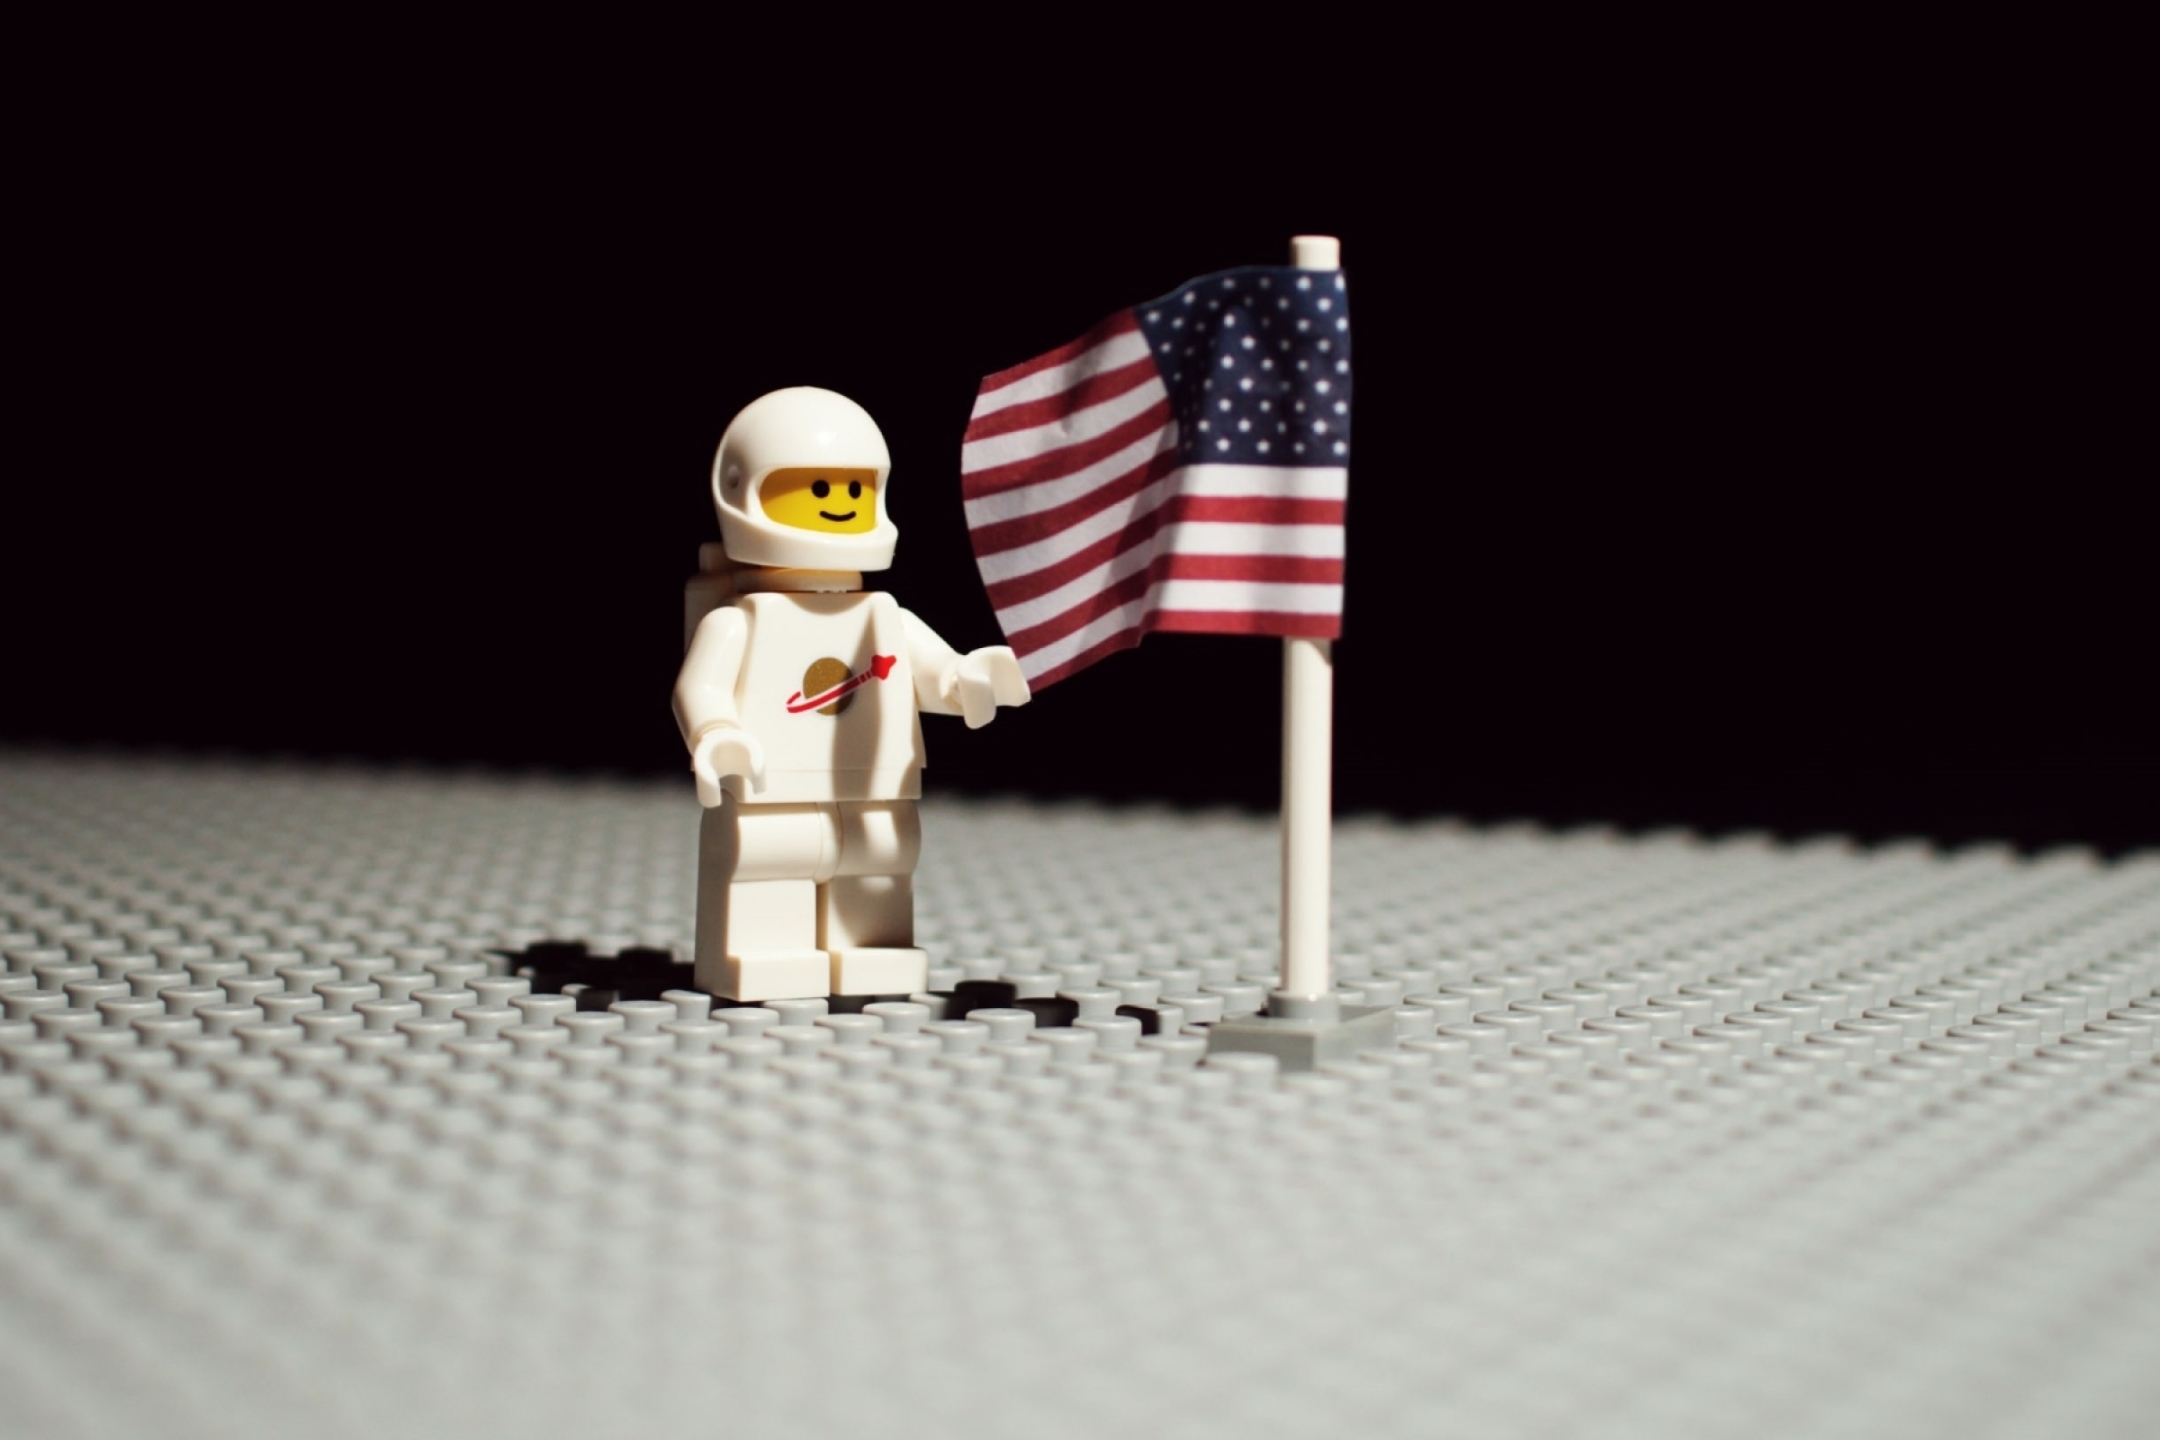 Скачать обои бесплатно Игрушка, Флаг, Фигурка, Космонавт, Астронавт, Продукты, Лего картинка на рабочий стол ПК